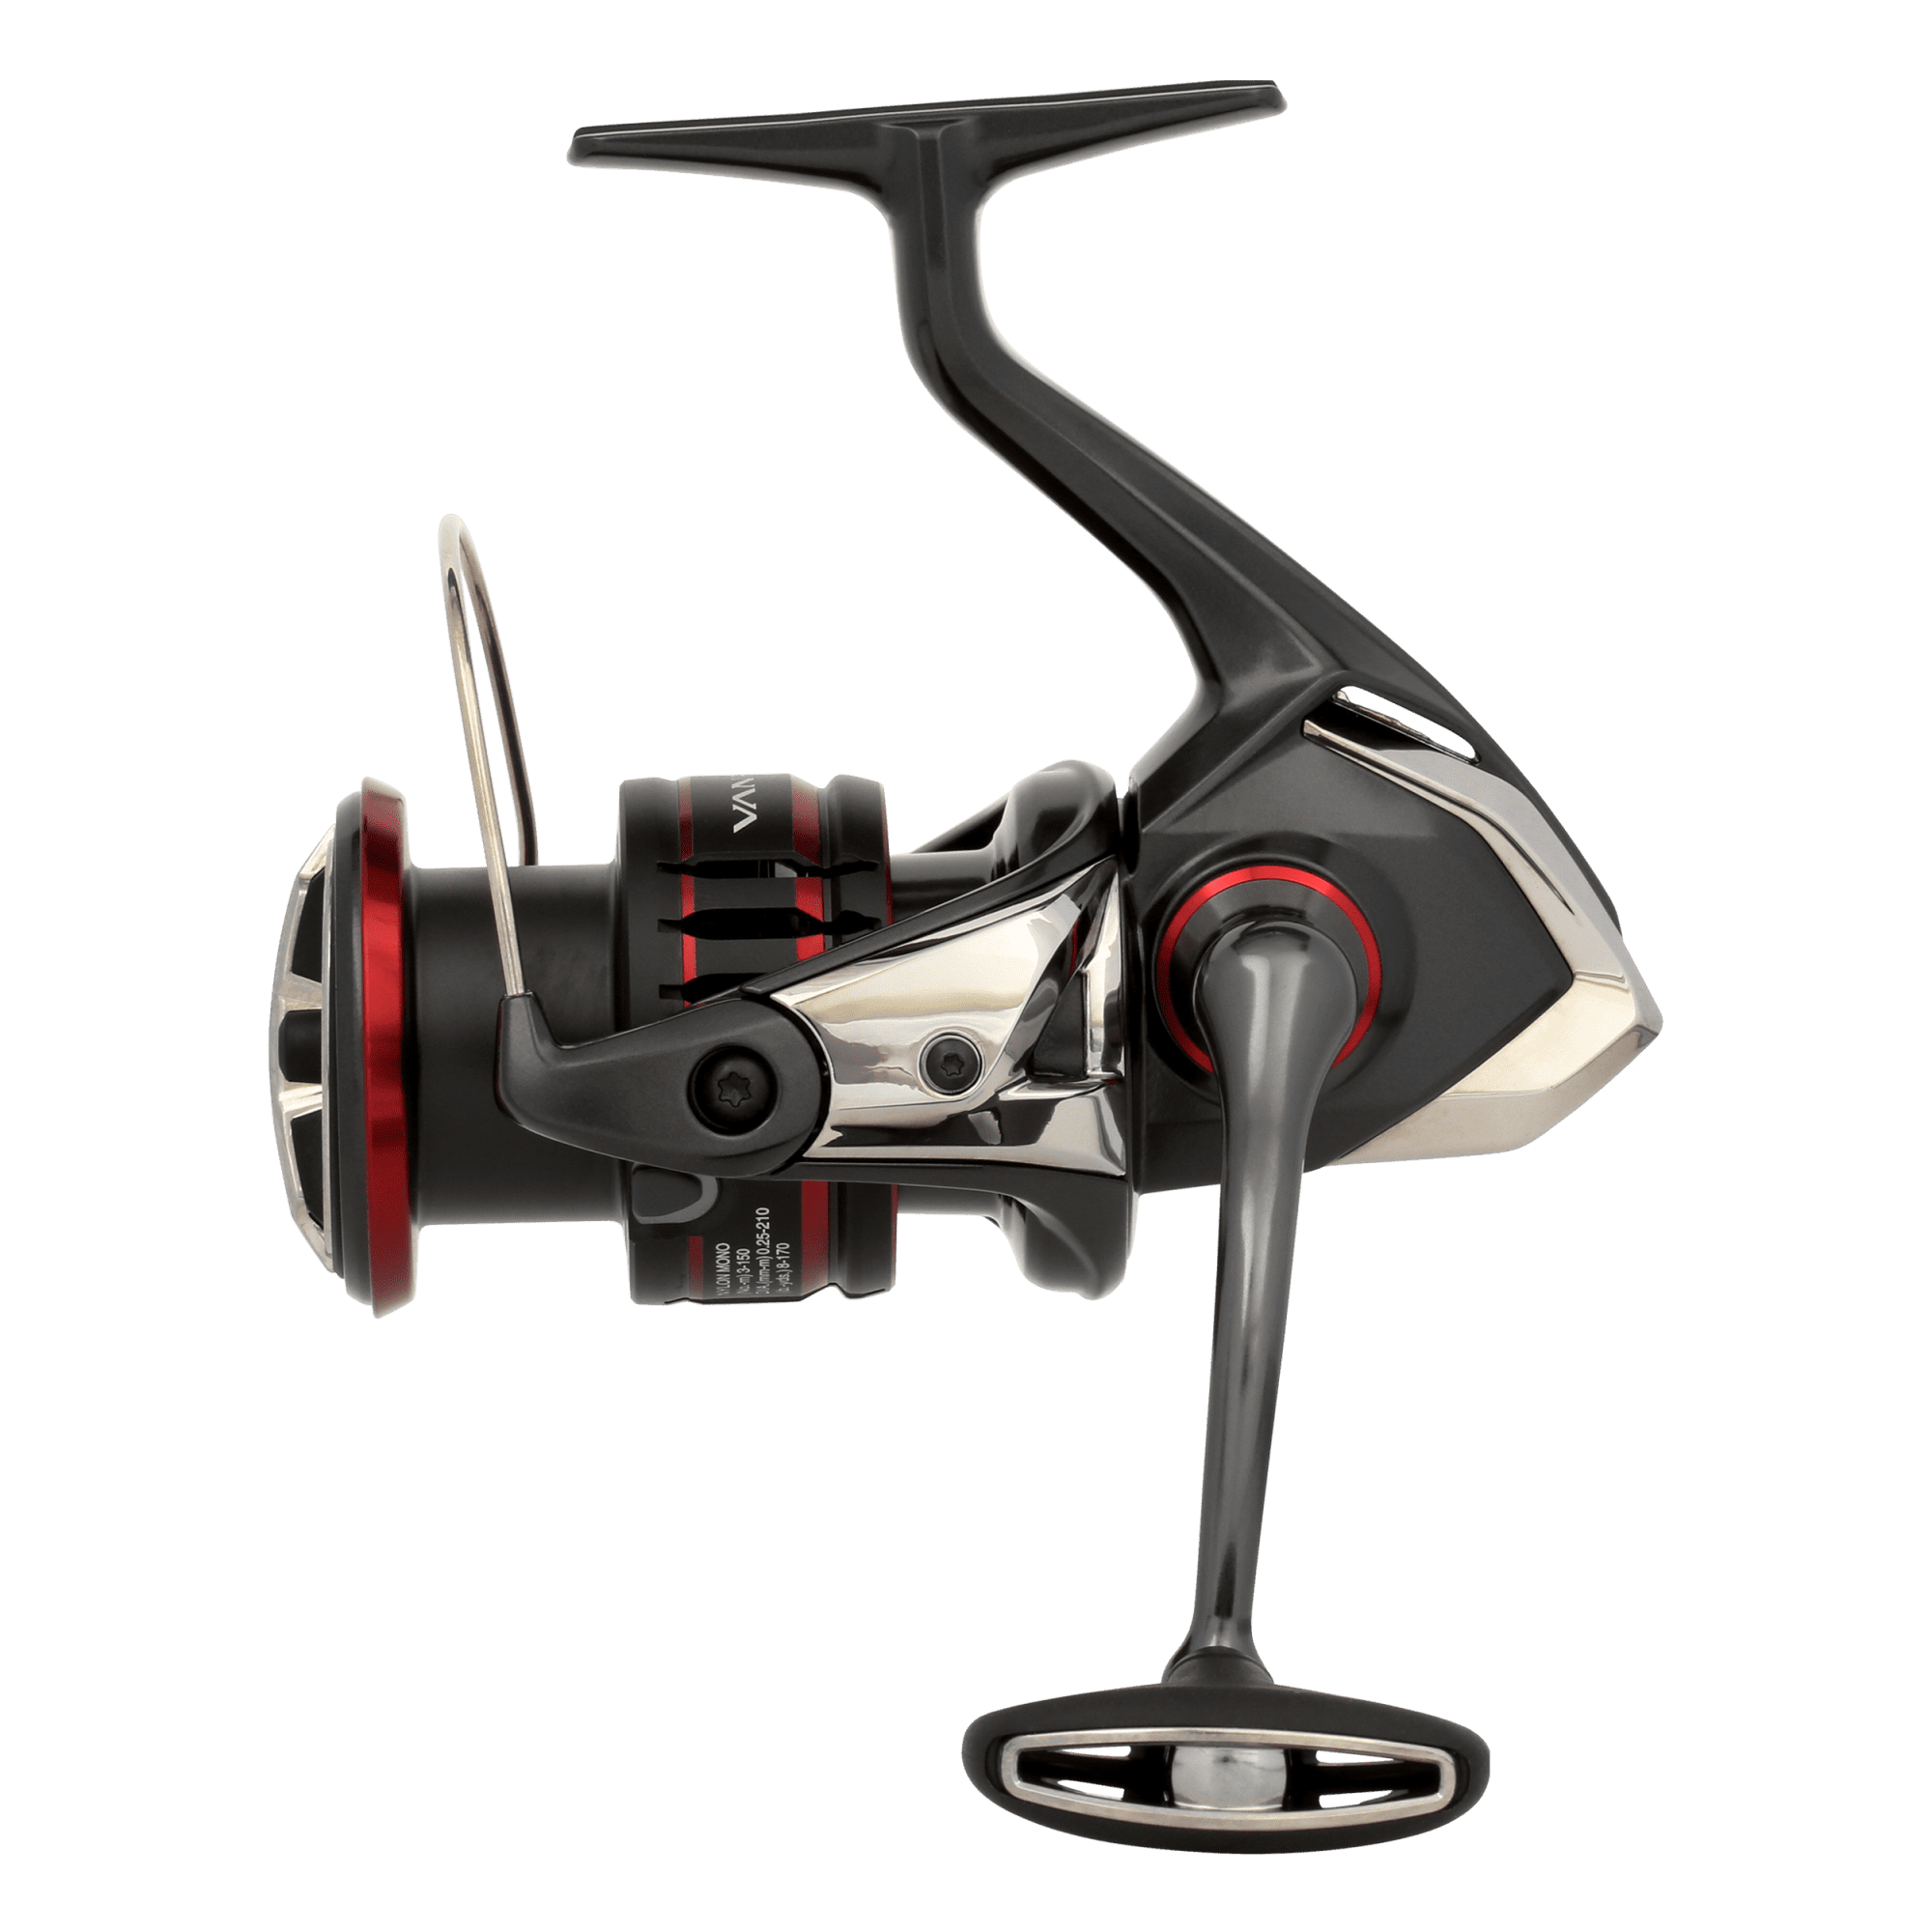 Shimano Spinning Reel Part - RD1104 Custom X Speedmaster CX5000SM - Body